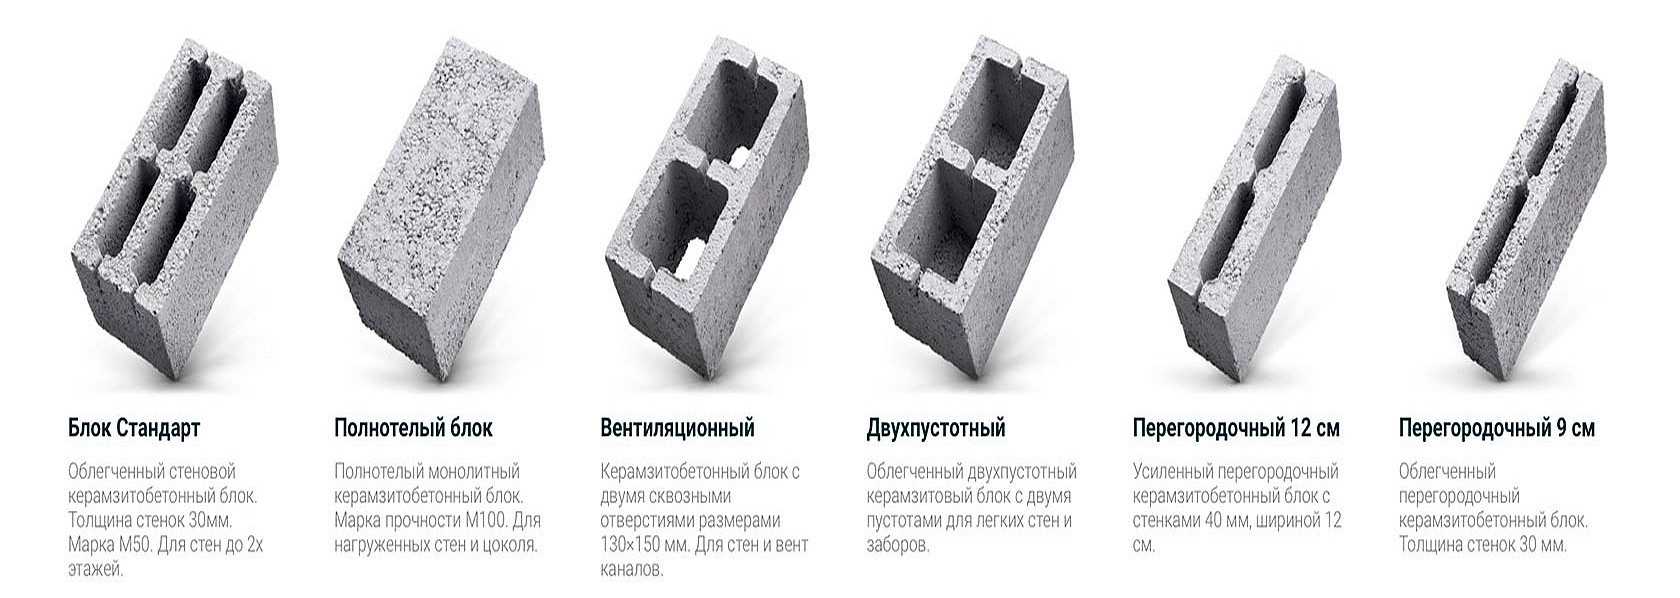 Арболитовые блоки - недостатки, технические характеристики, размеры, состав